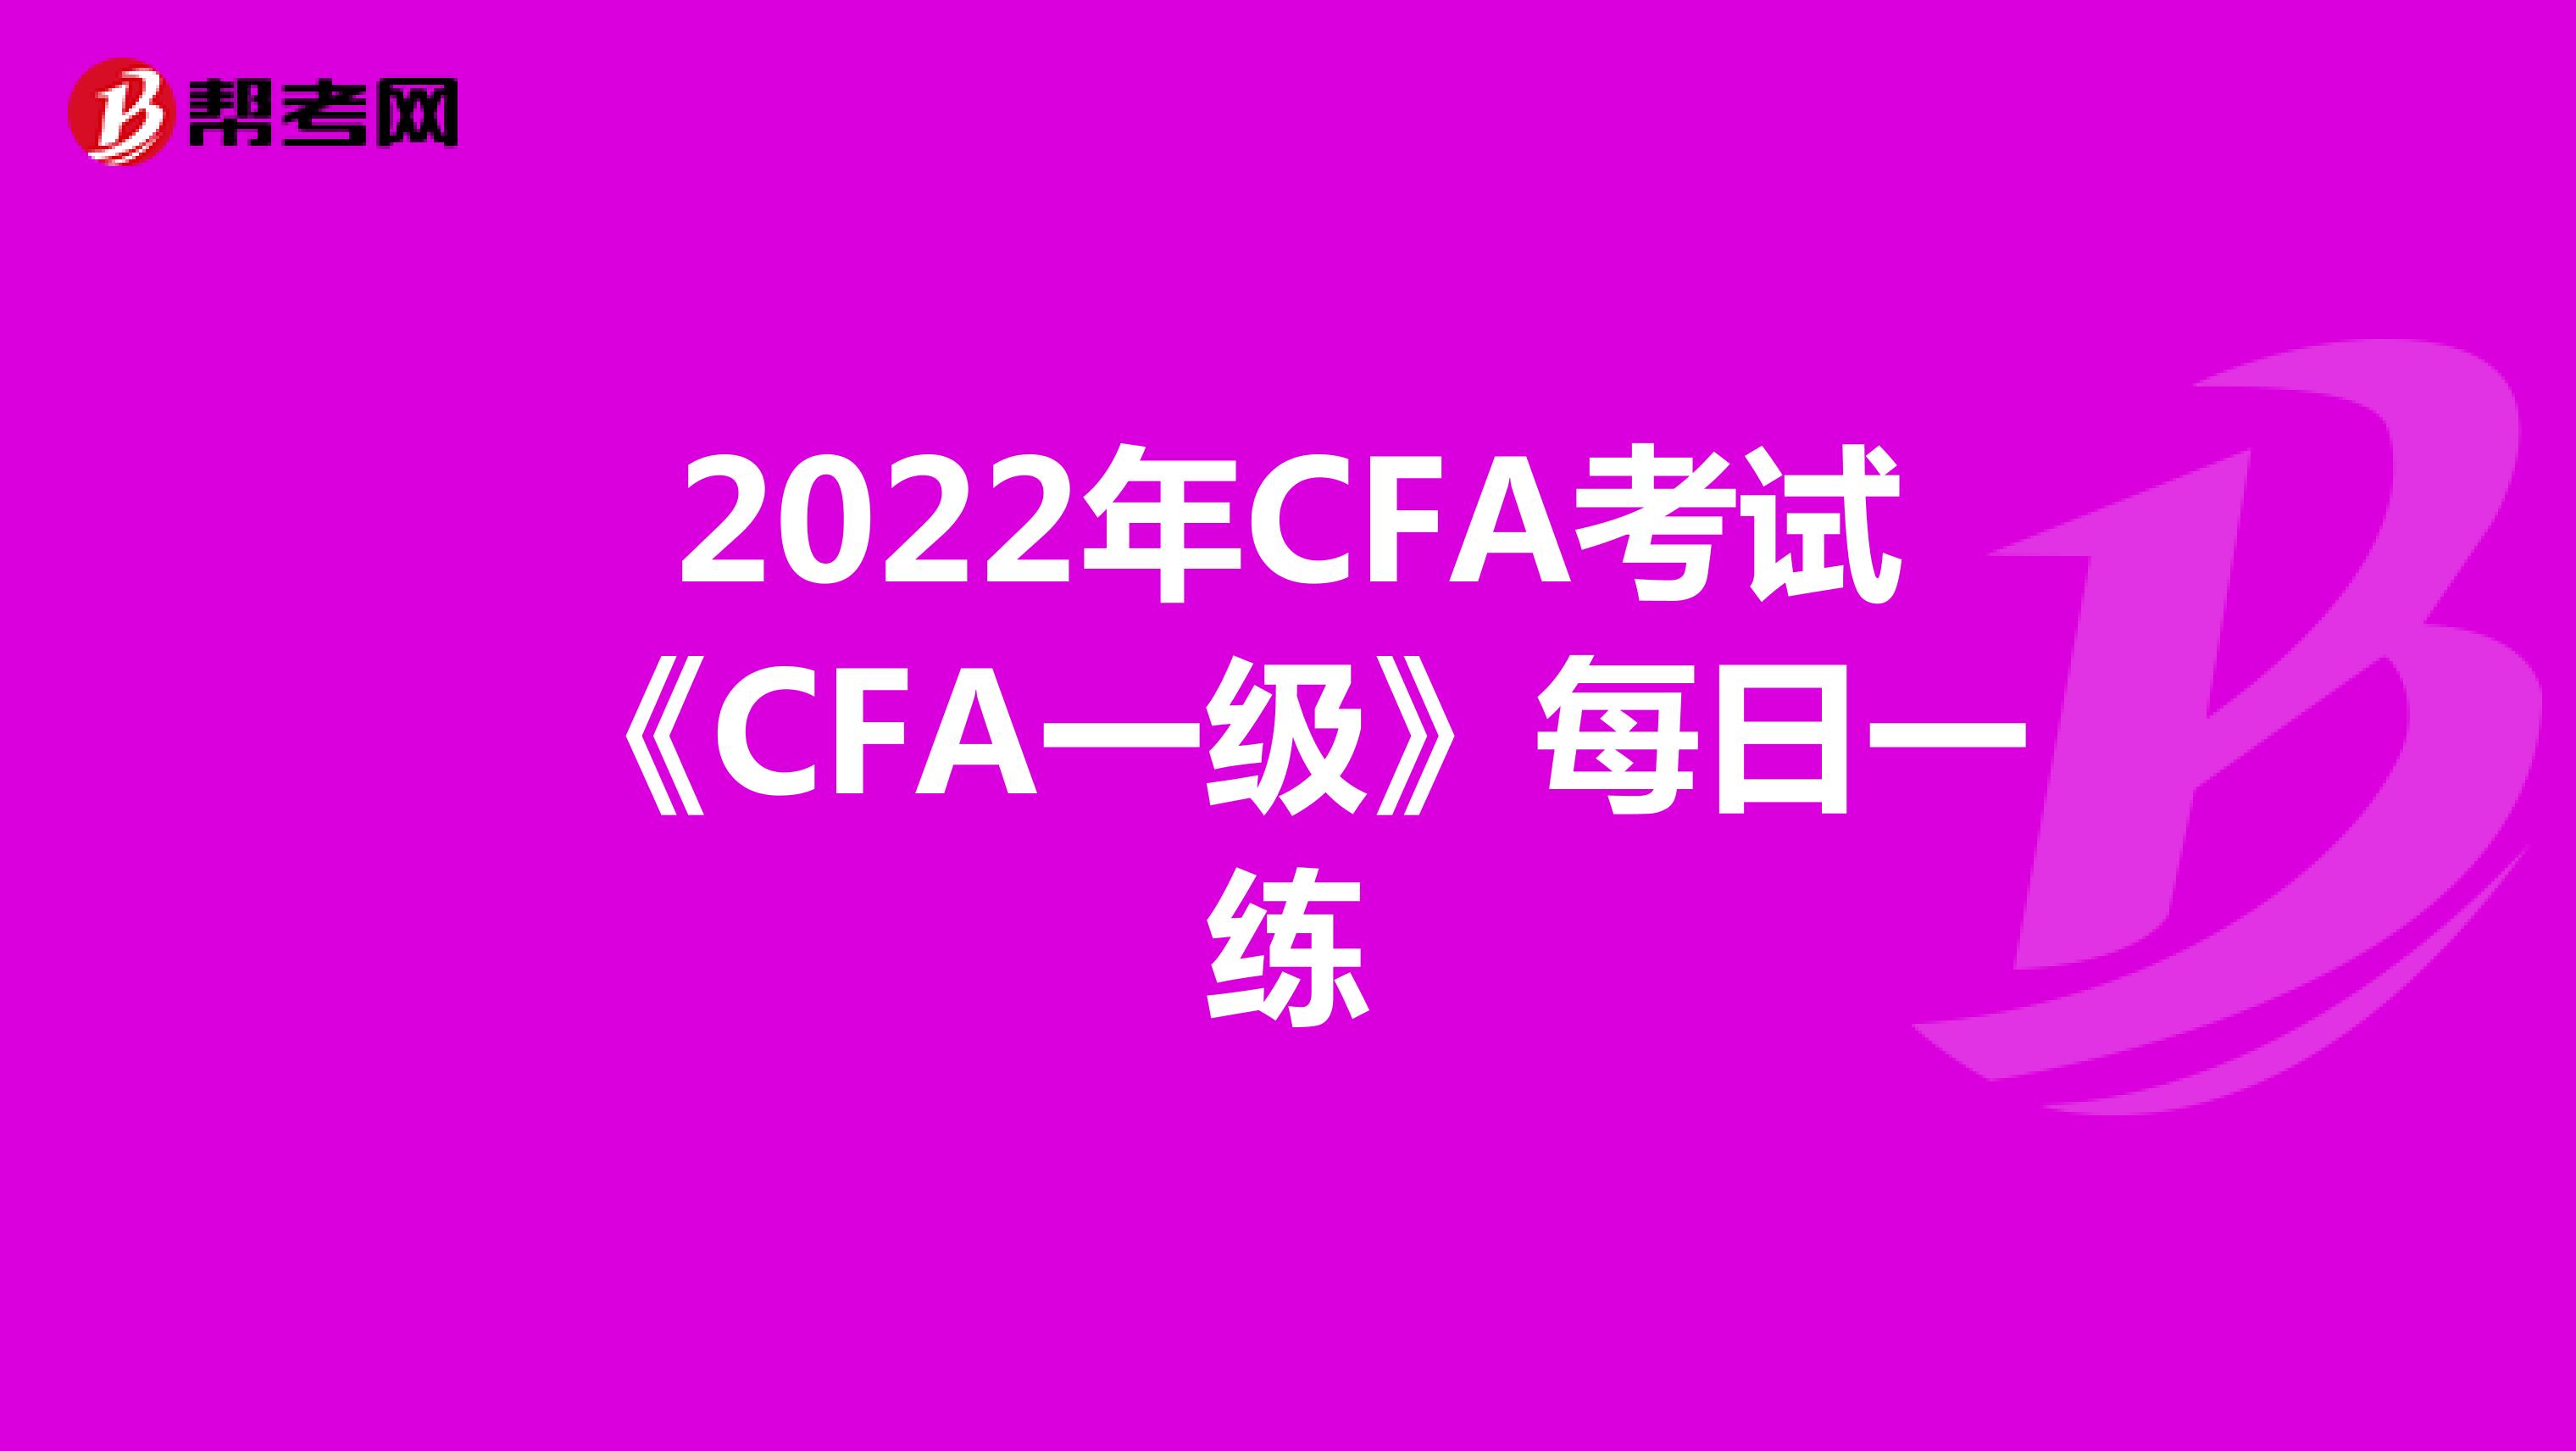 2022年CFA考试《CFA一级》每日一练